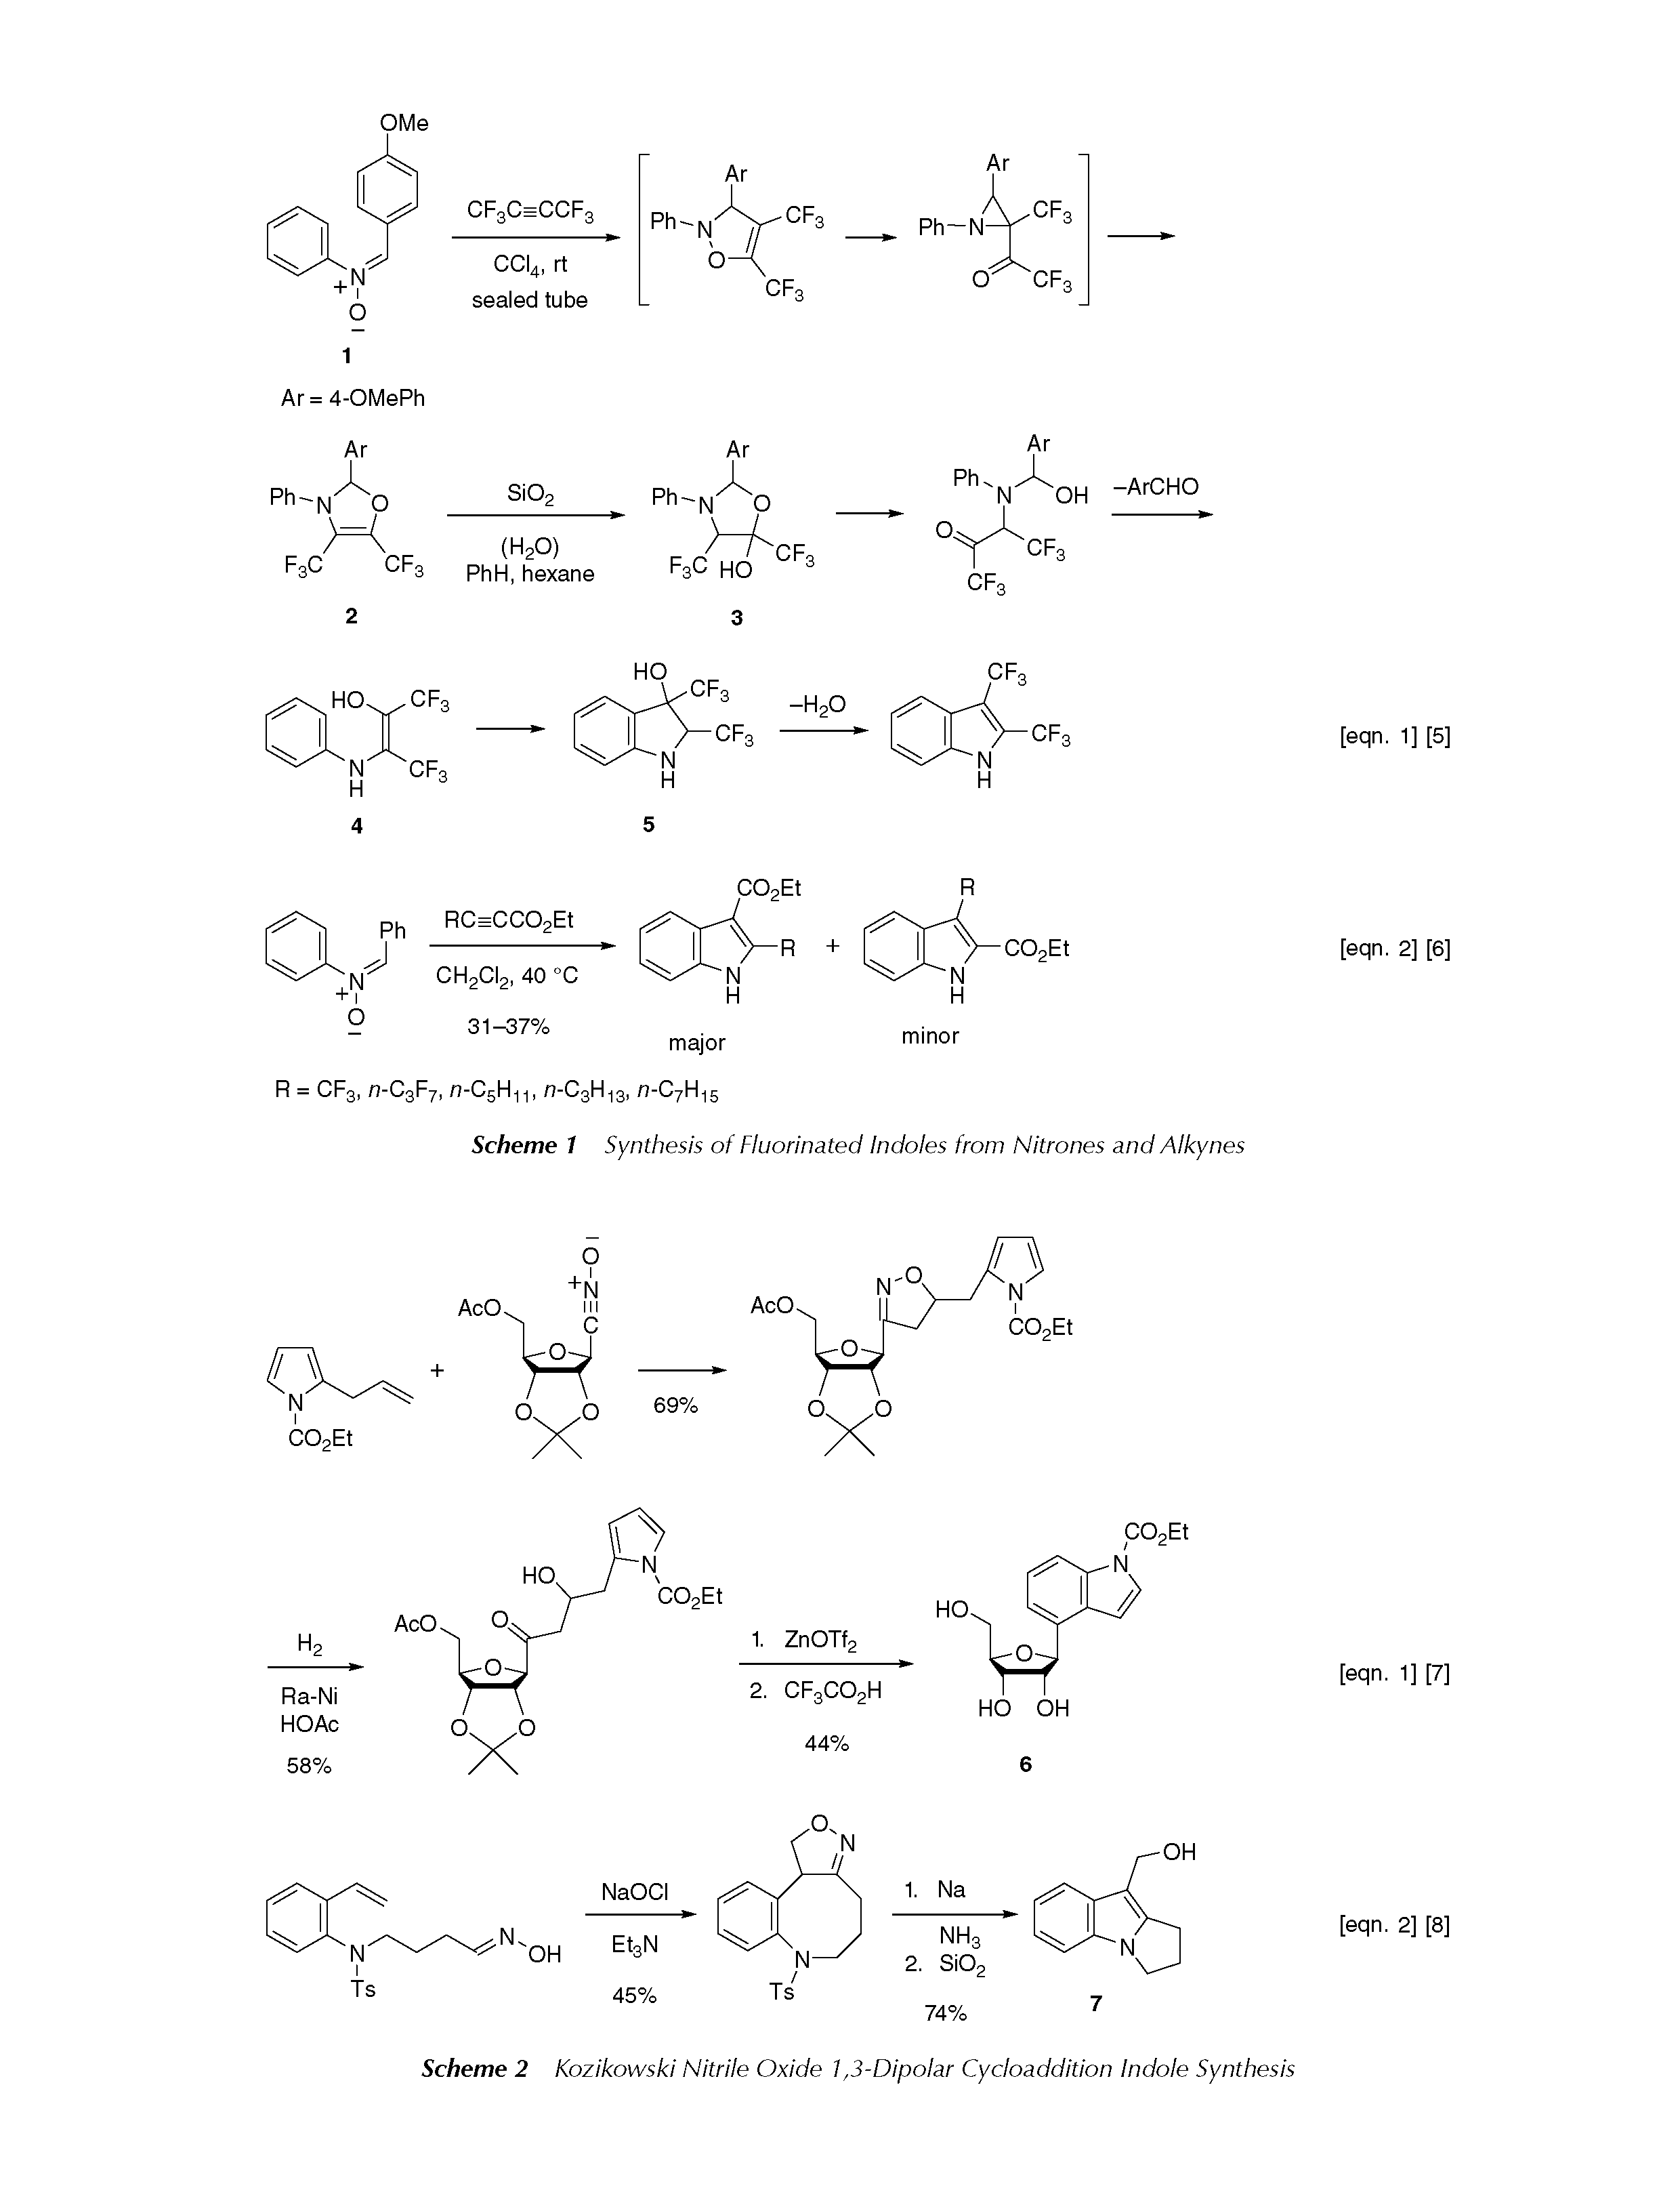 Scheme 2 Kozikowski Nitrile Oxide 1,3-Dipolar Cycloaddition Indole Synthesis...